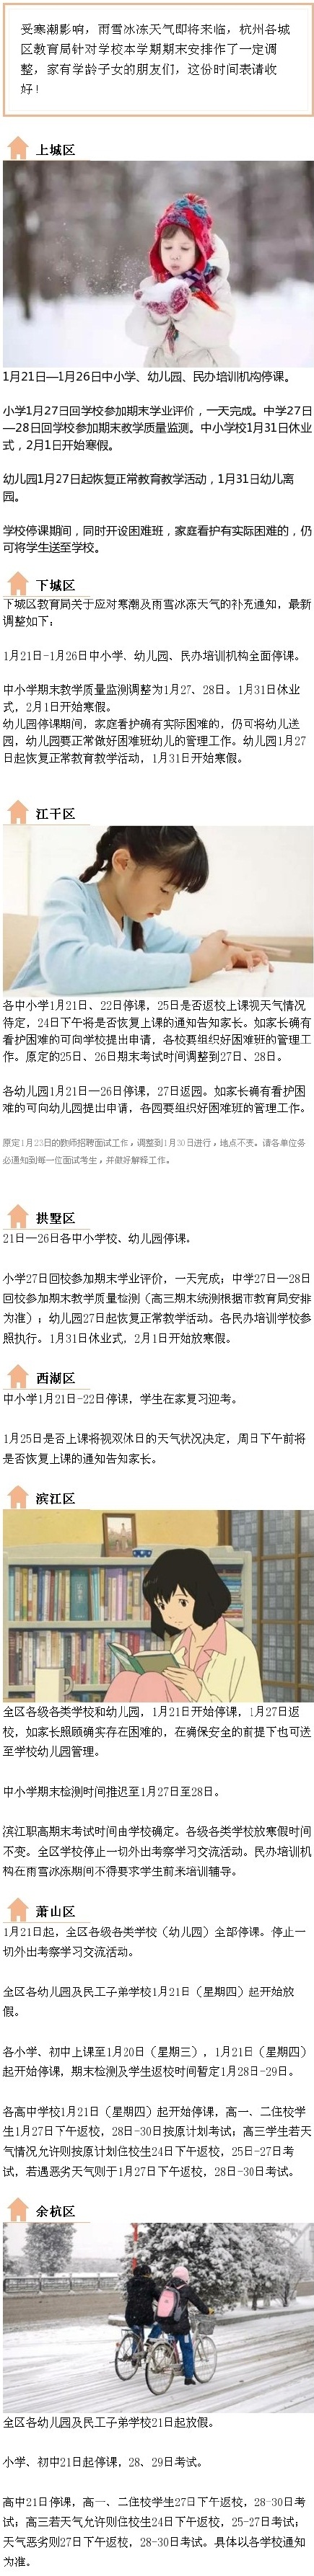 2016杭州所有中小学停课和期末考试安排1